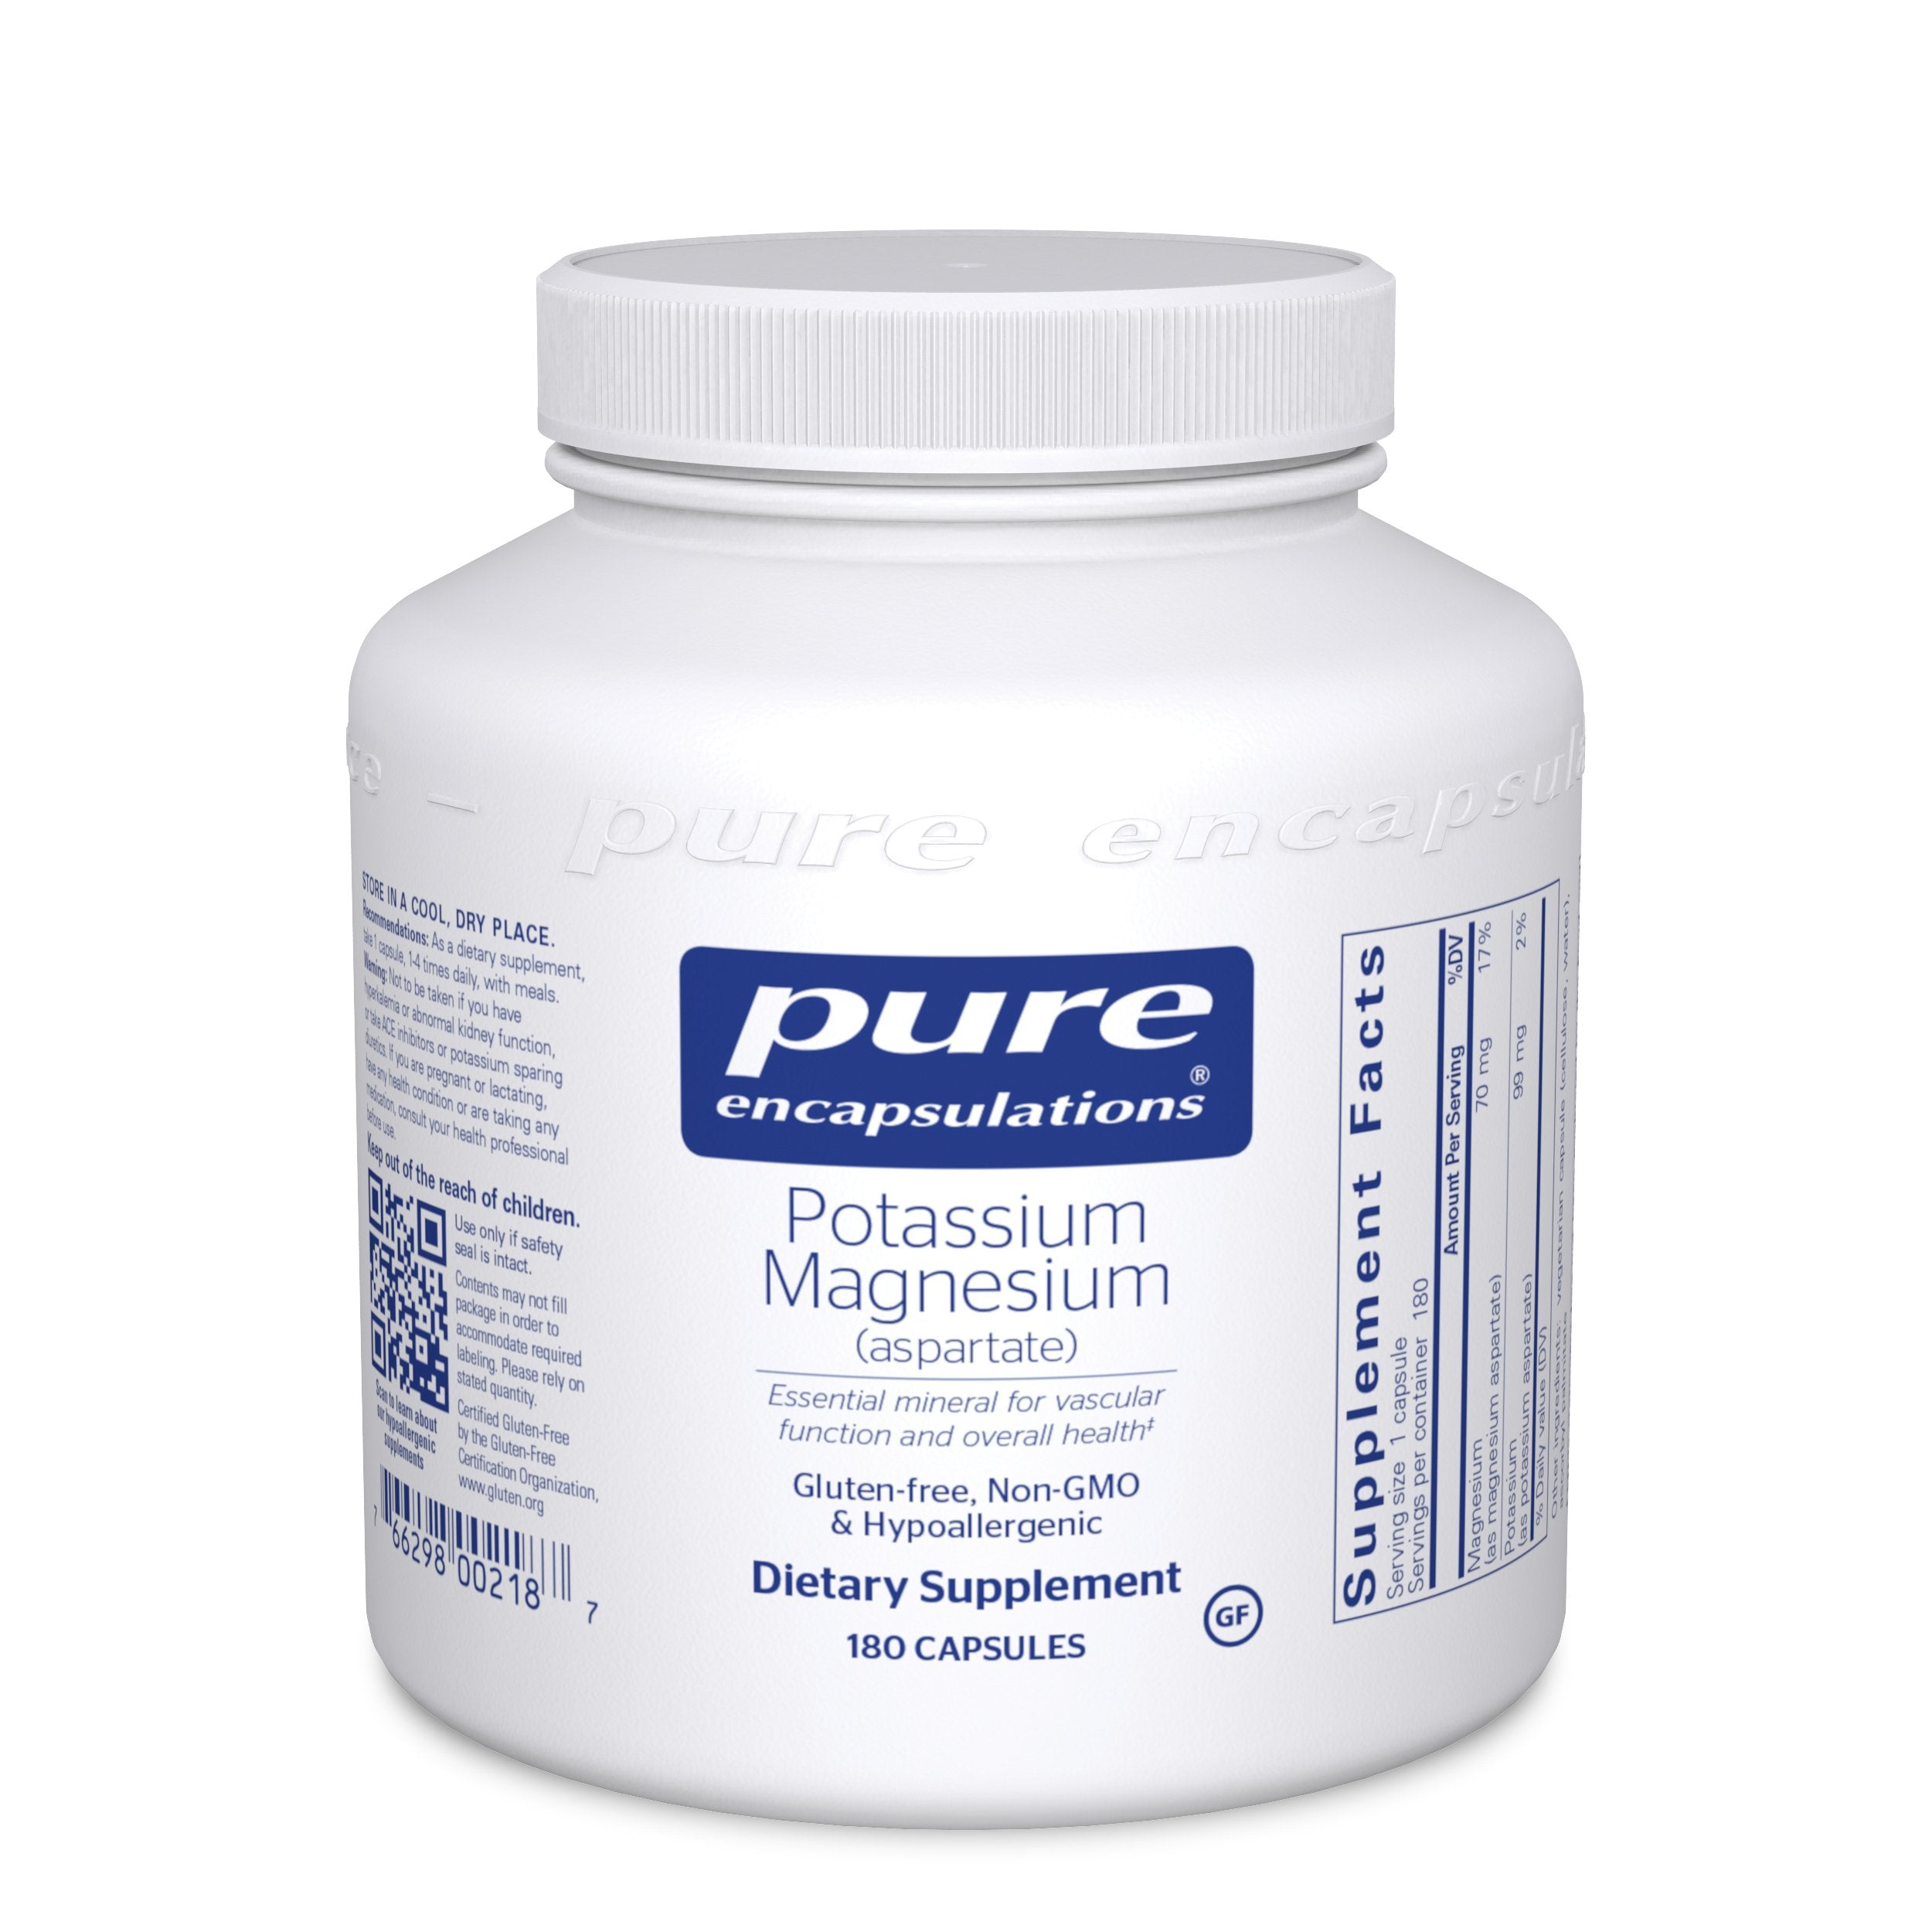 Pure Encapsulations Potassium/Magnesium (aspartate) - 90/180 Capsules